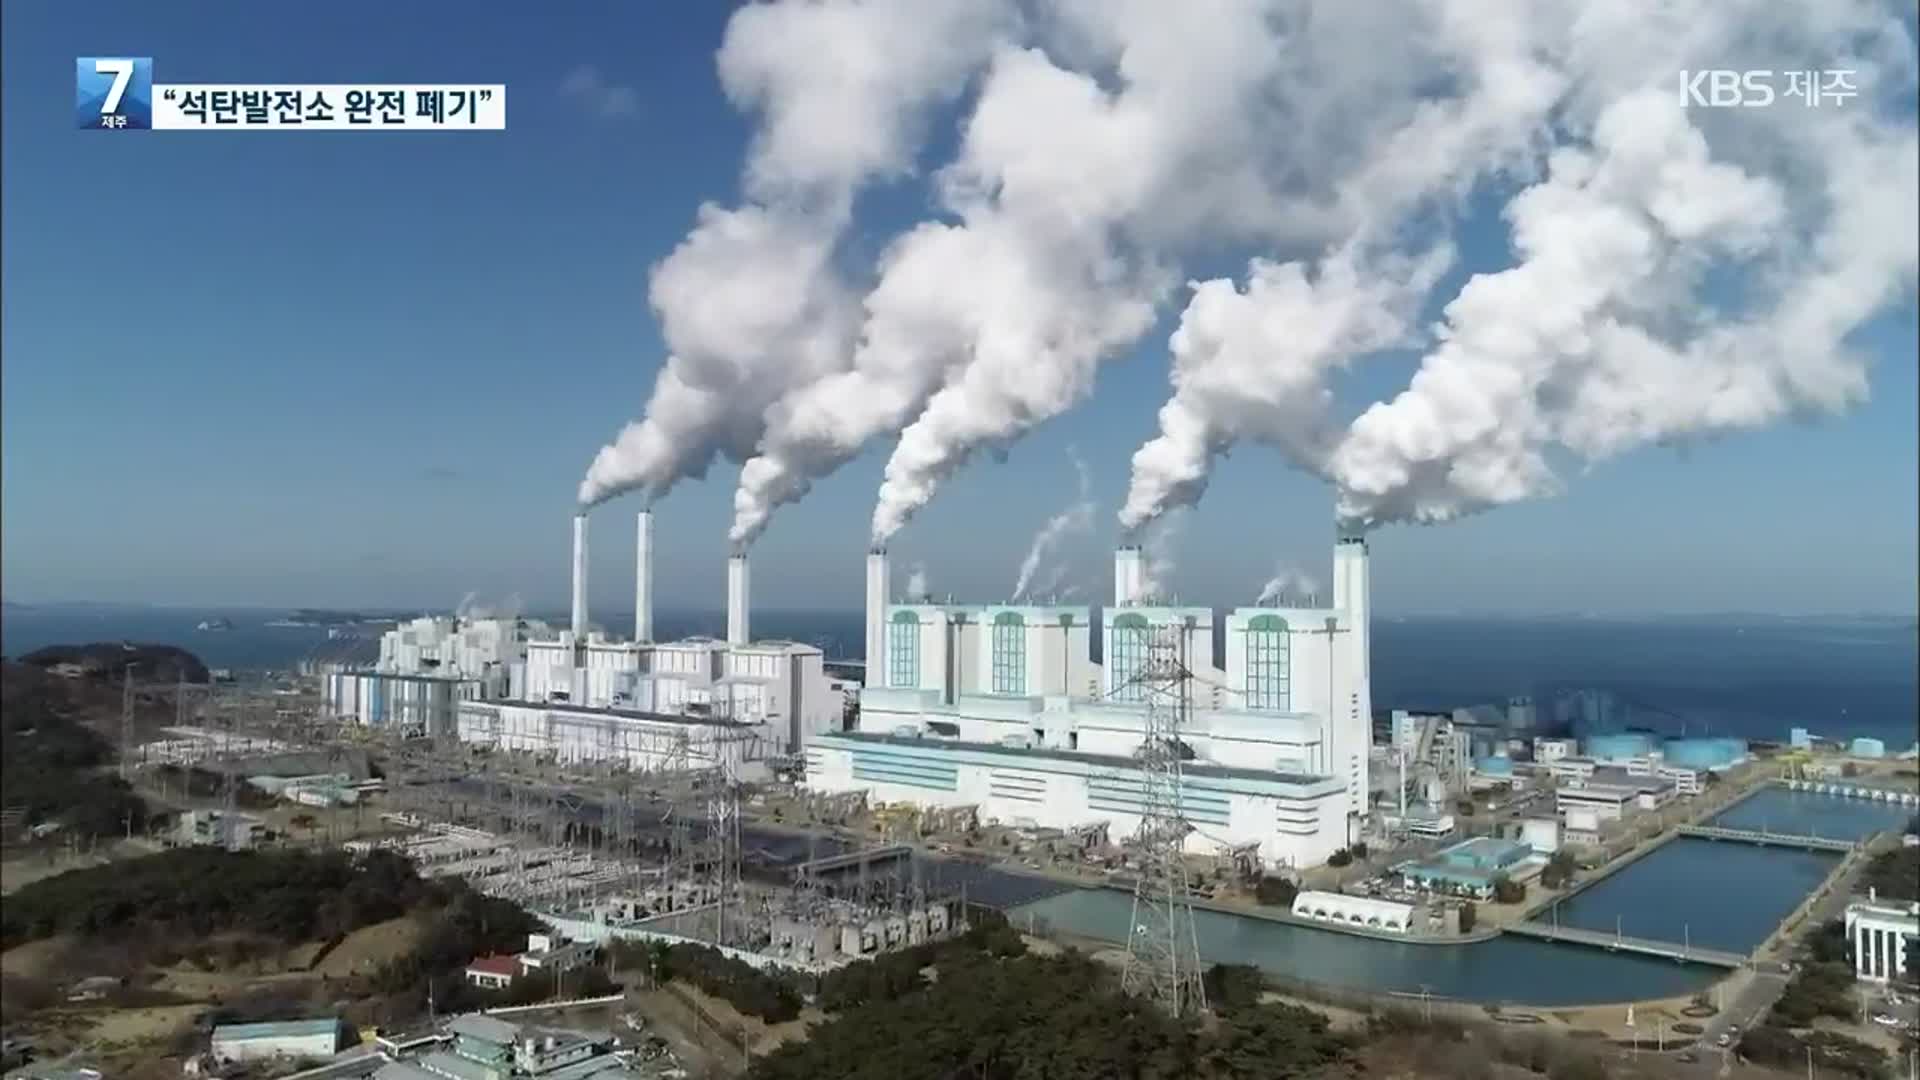 ‘2050 탄소중립 시나리오’ 확정…“석탄발전소 완전 폐기”